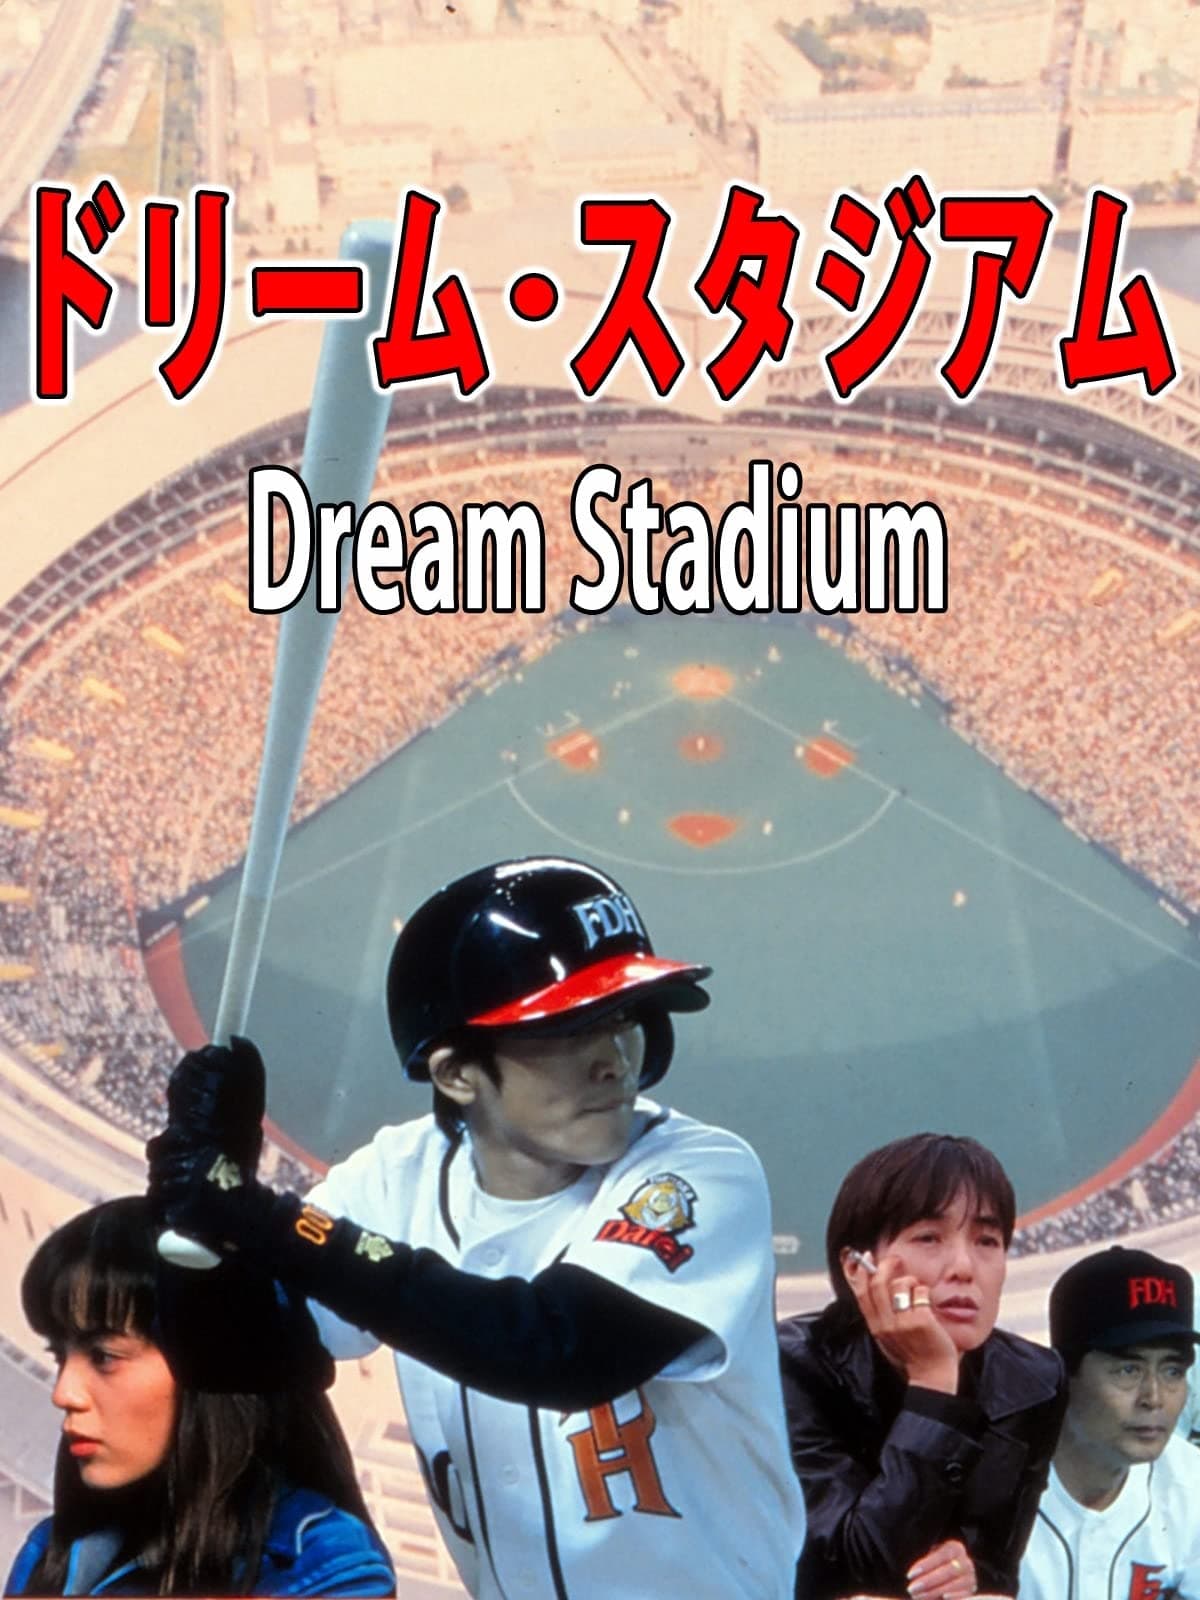 Dream Stadium